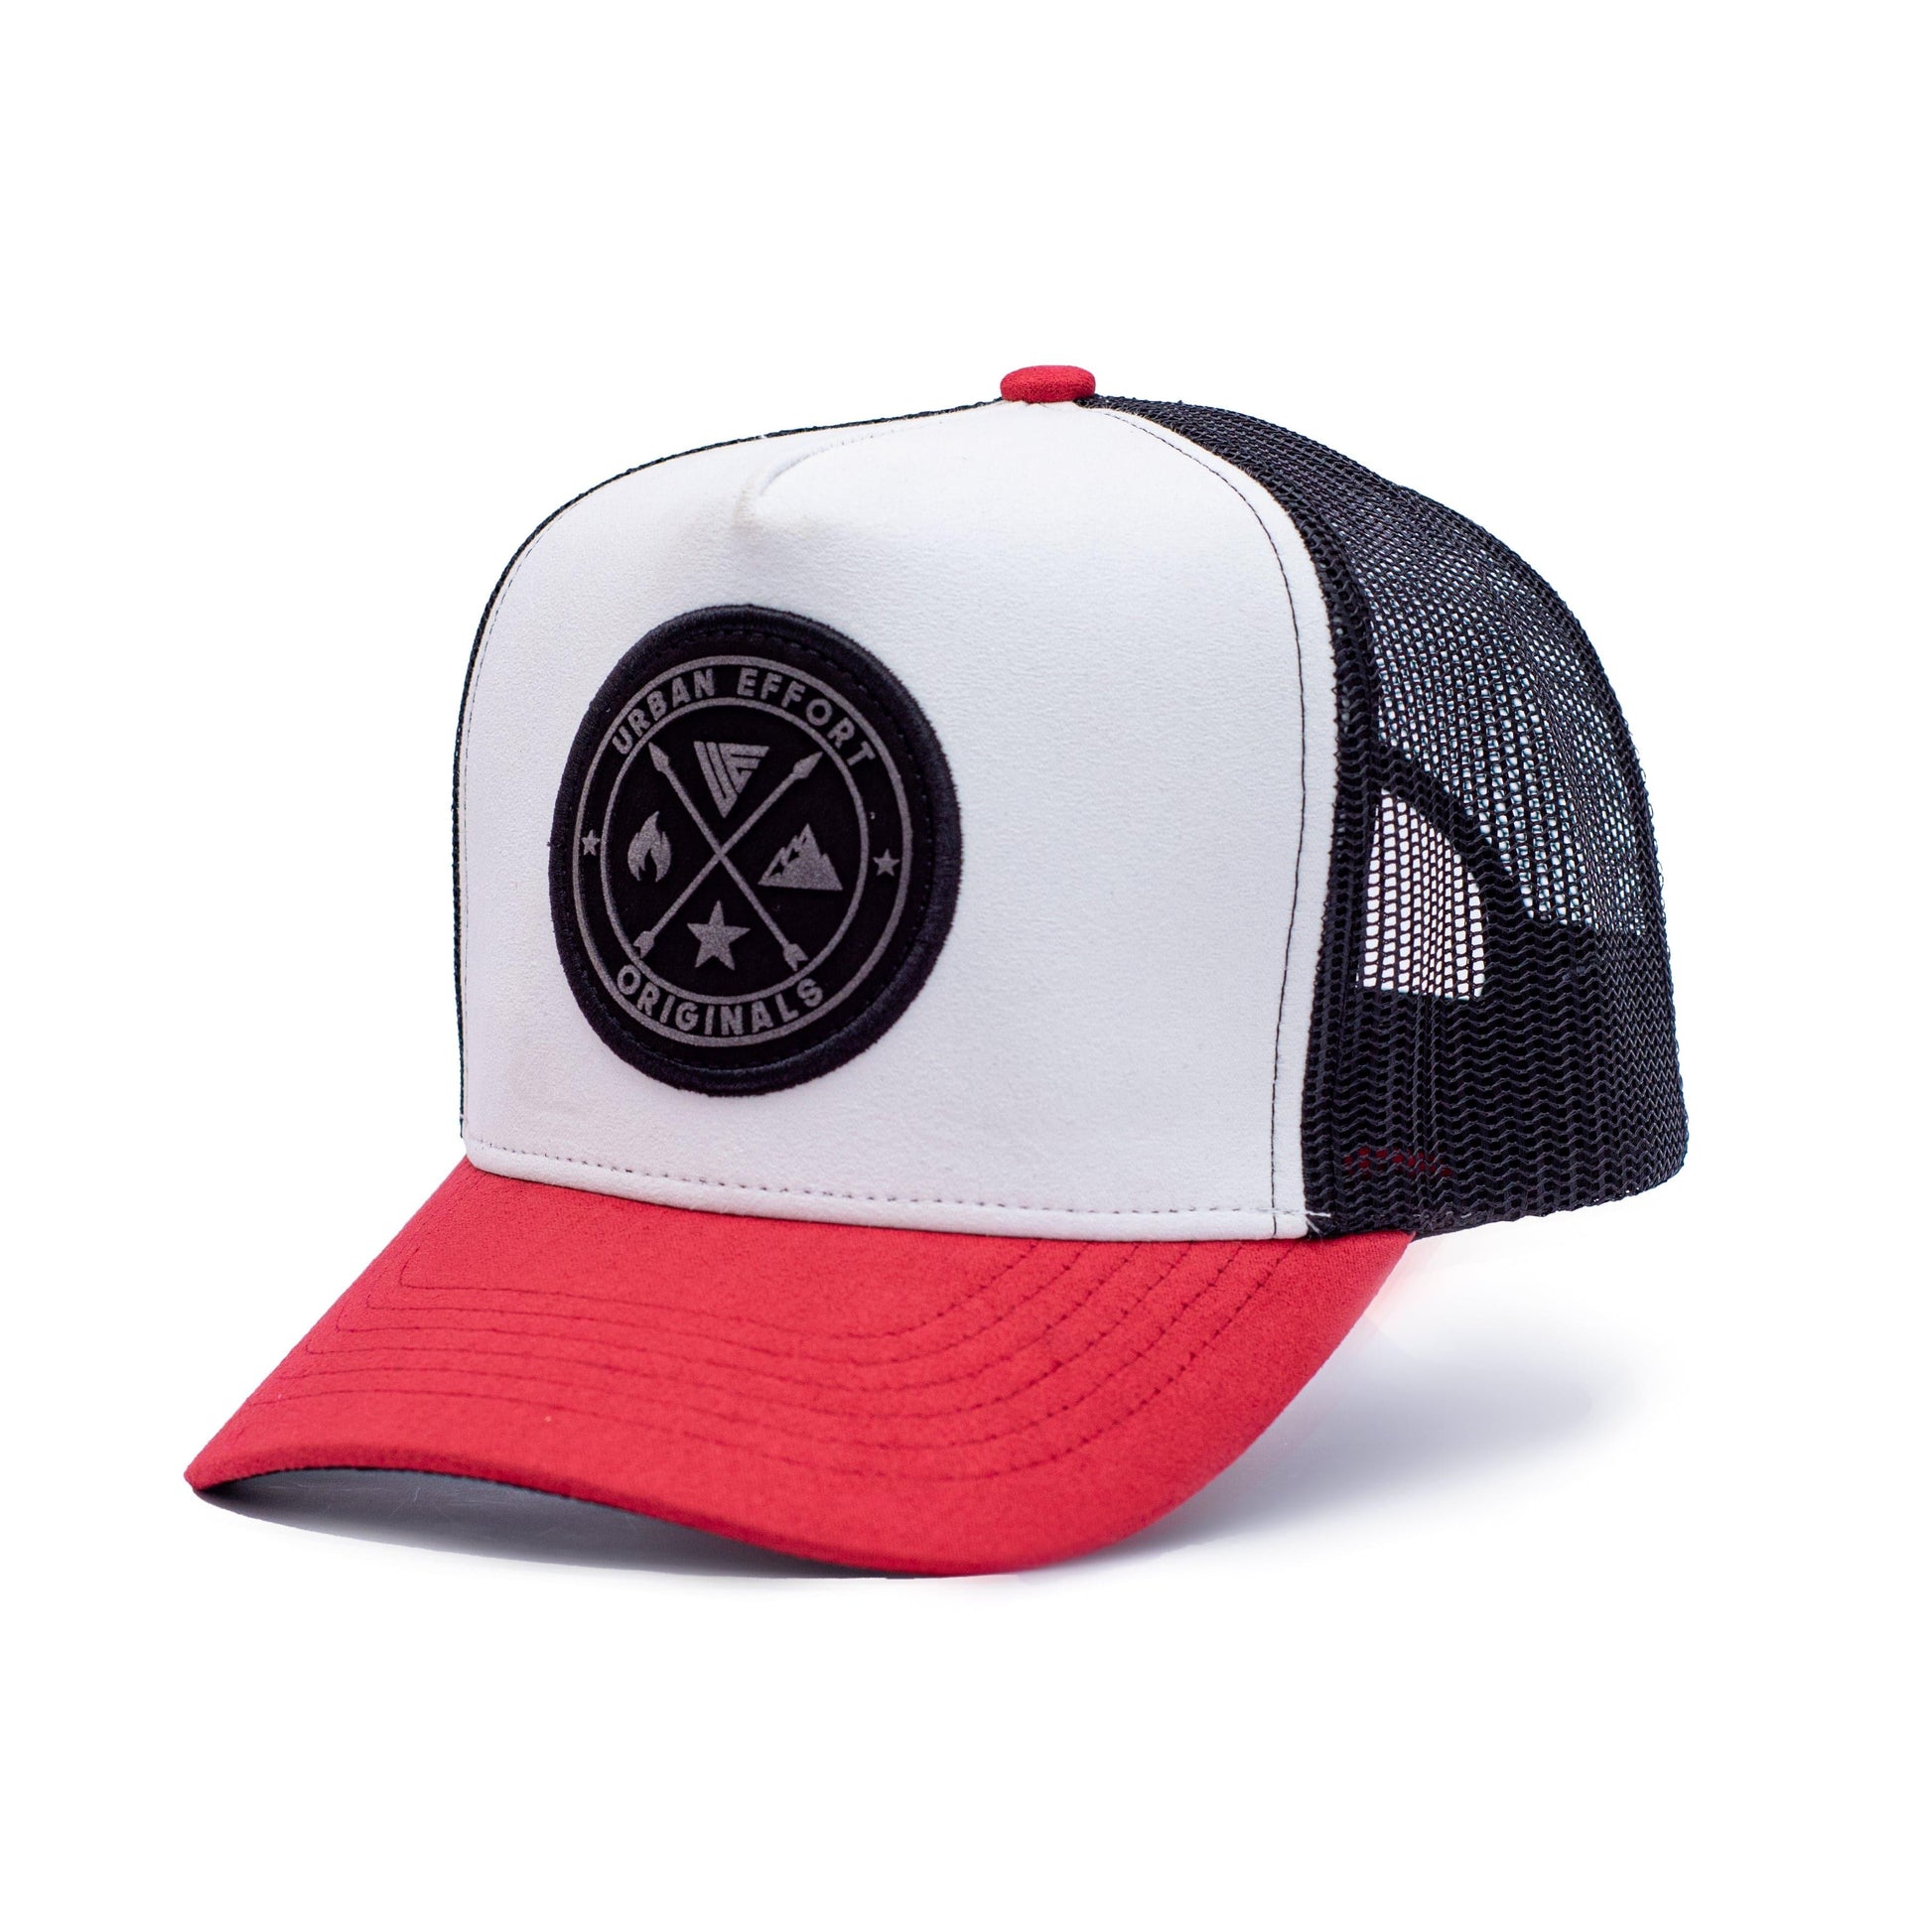 Black + White + Red Trucker Hat | Original's | Urban Effort - Urban Effort